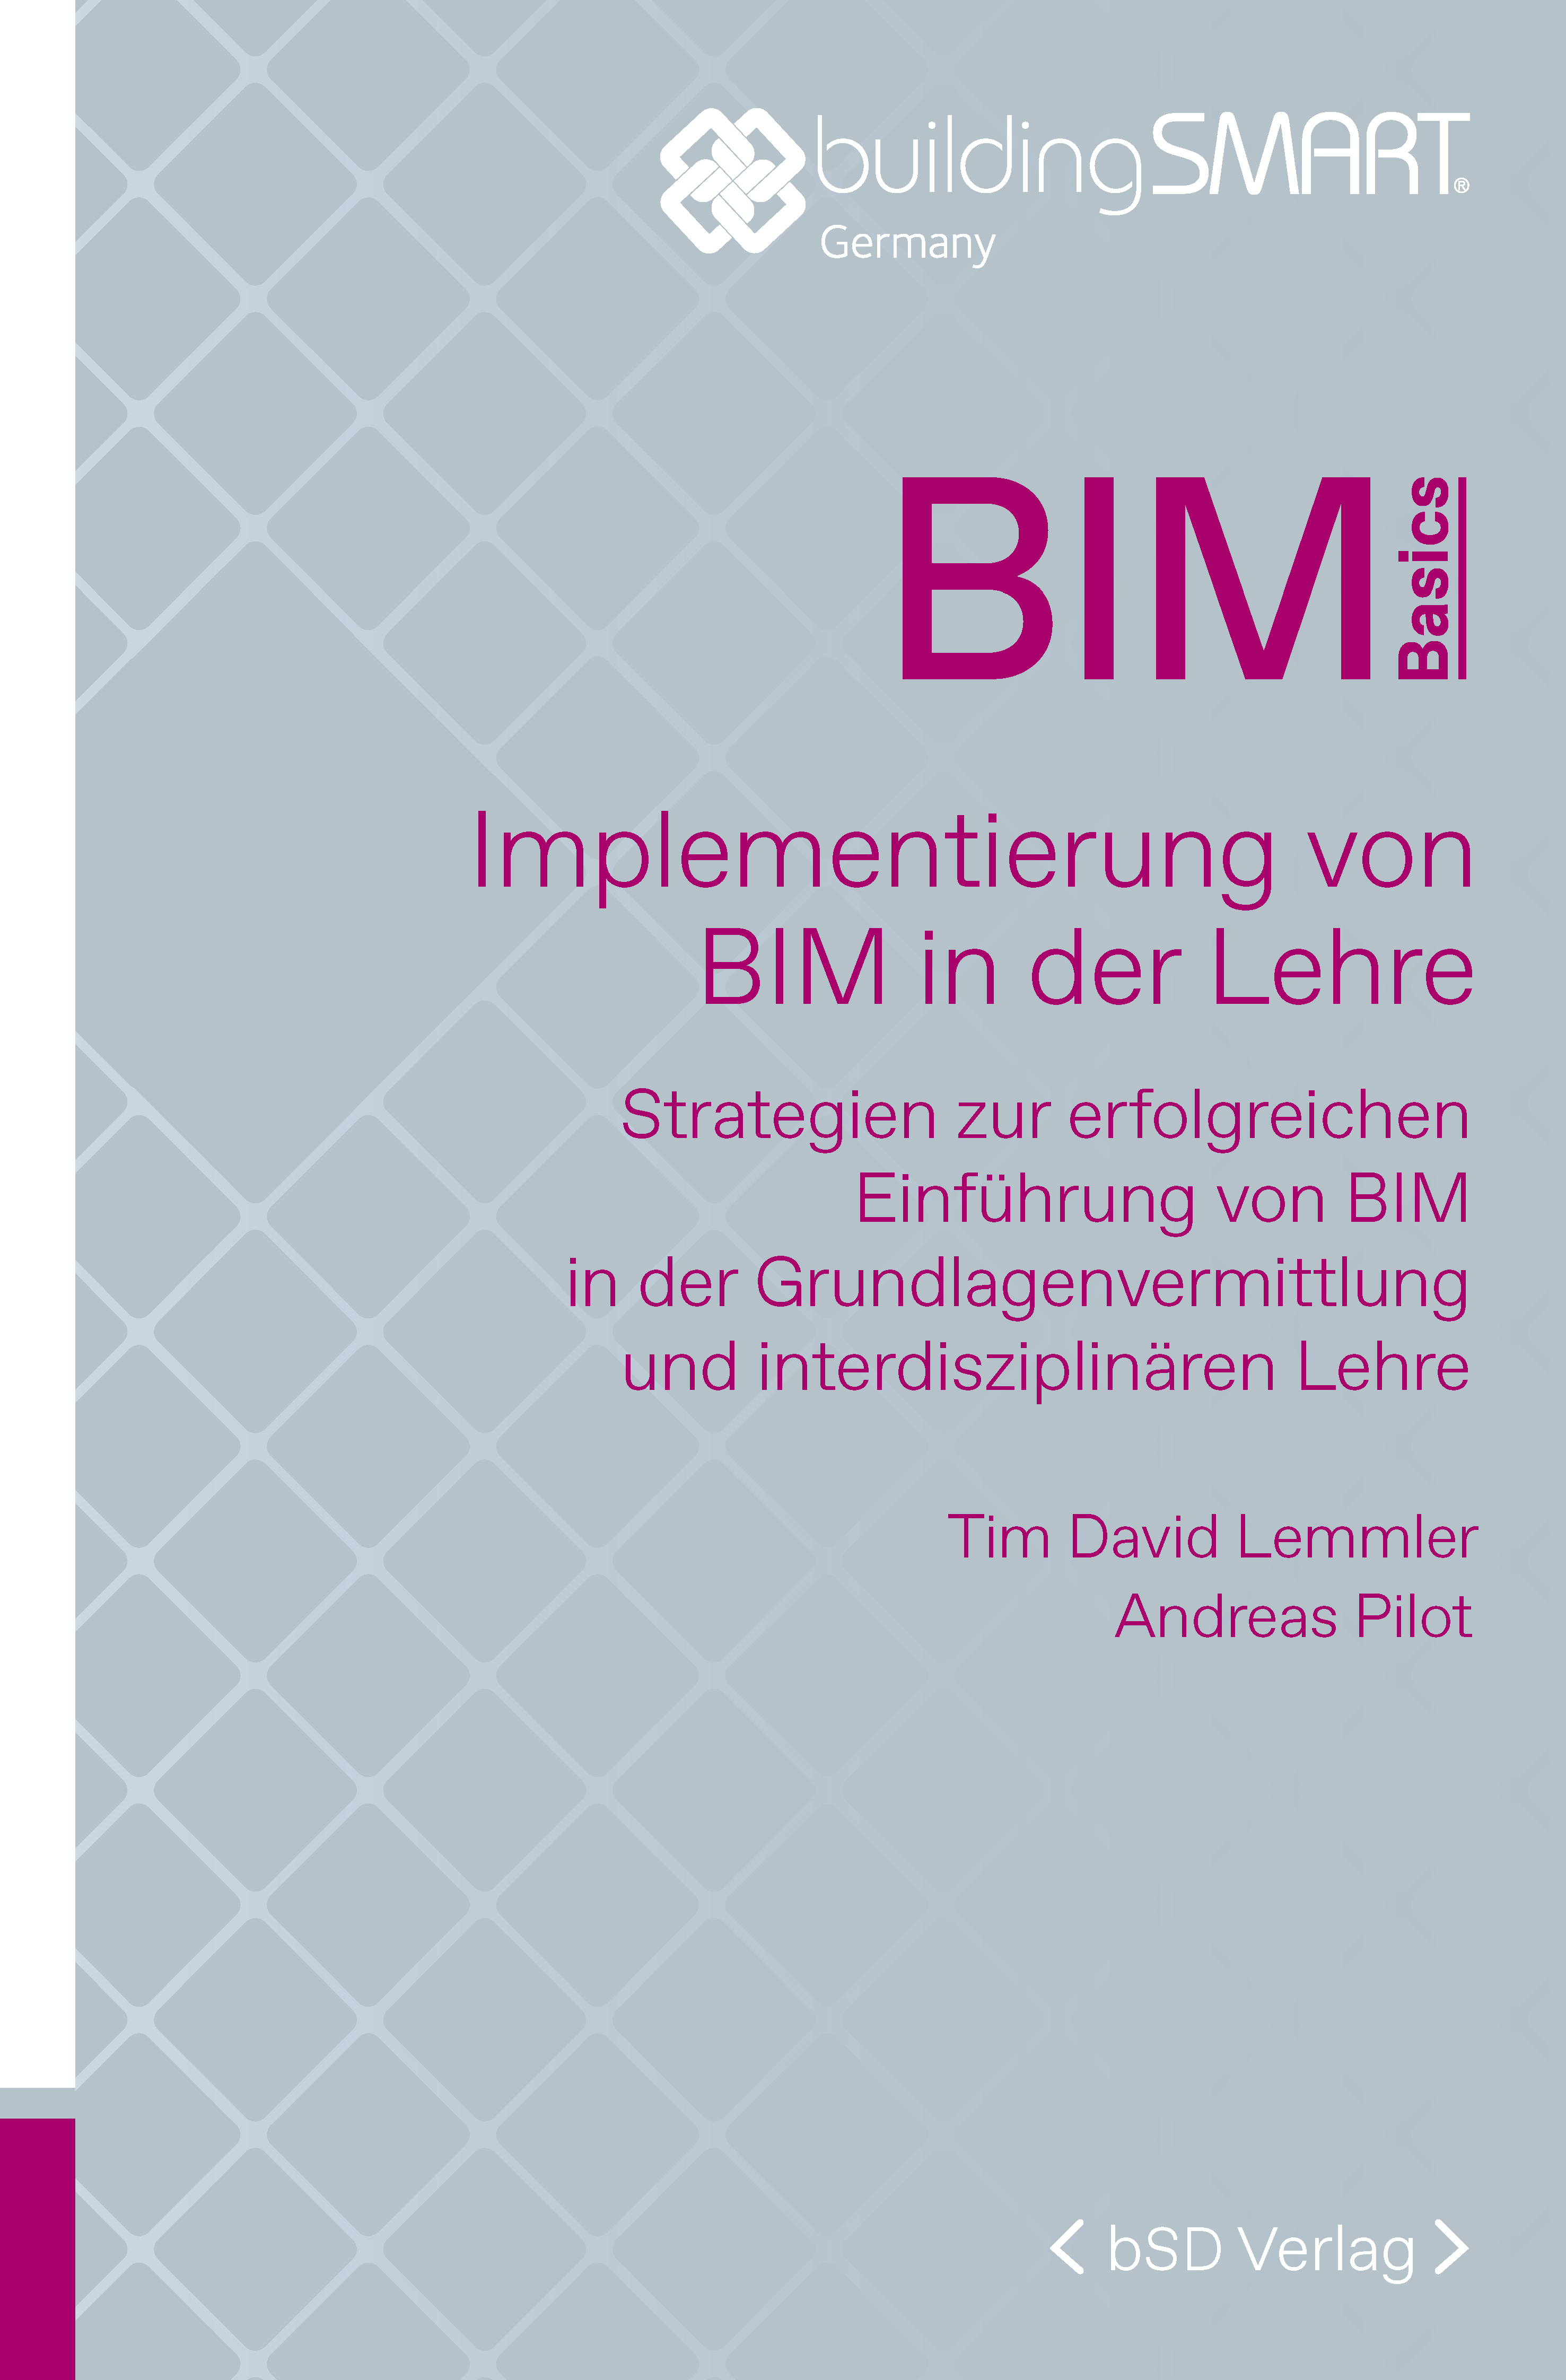 bSD Verlag/BIM Basics: Implementierung BIM in der Lehre